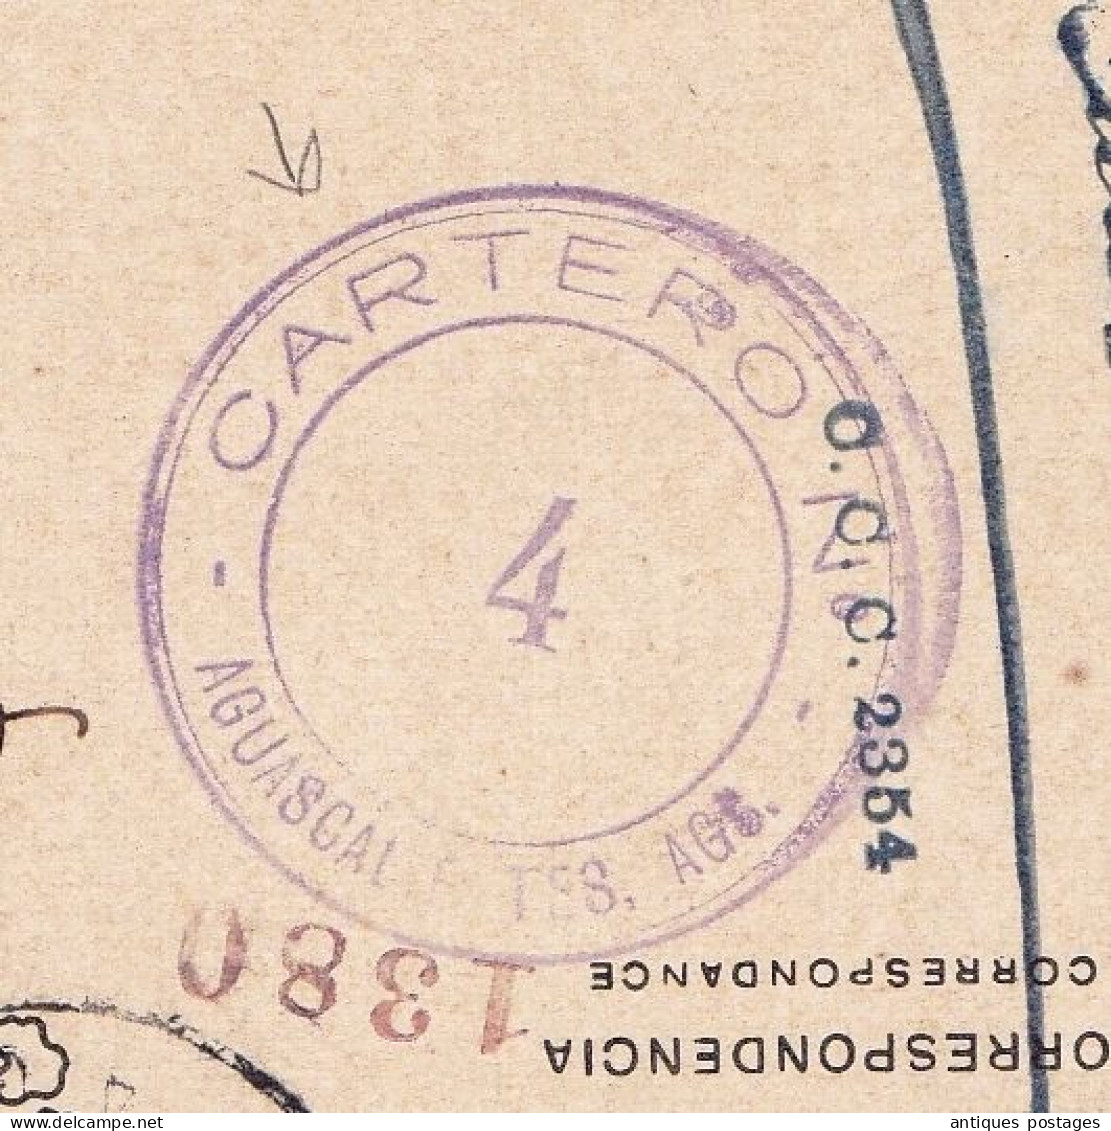 Bilhete Postal Lisboa Portugal Mexico Aguascalientes Cartero Carlos I de Portugal 20 Reis